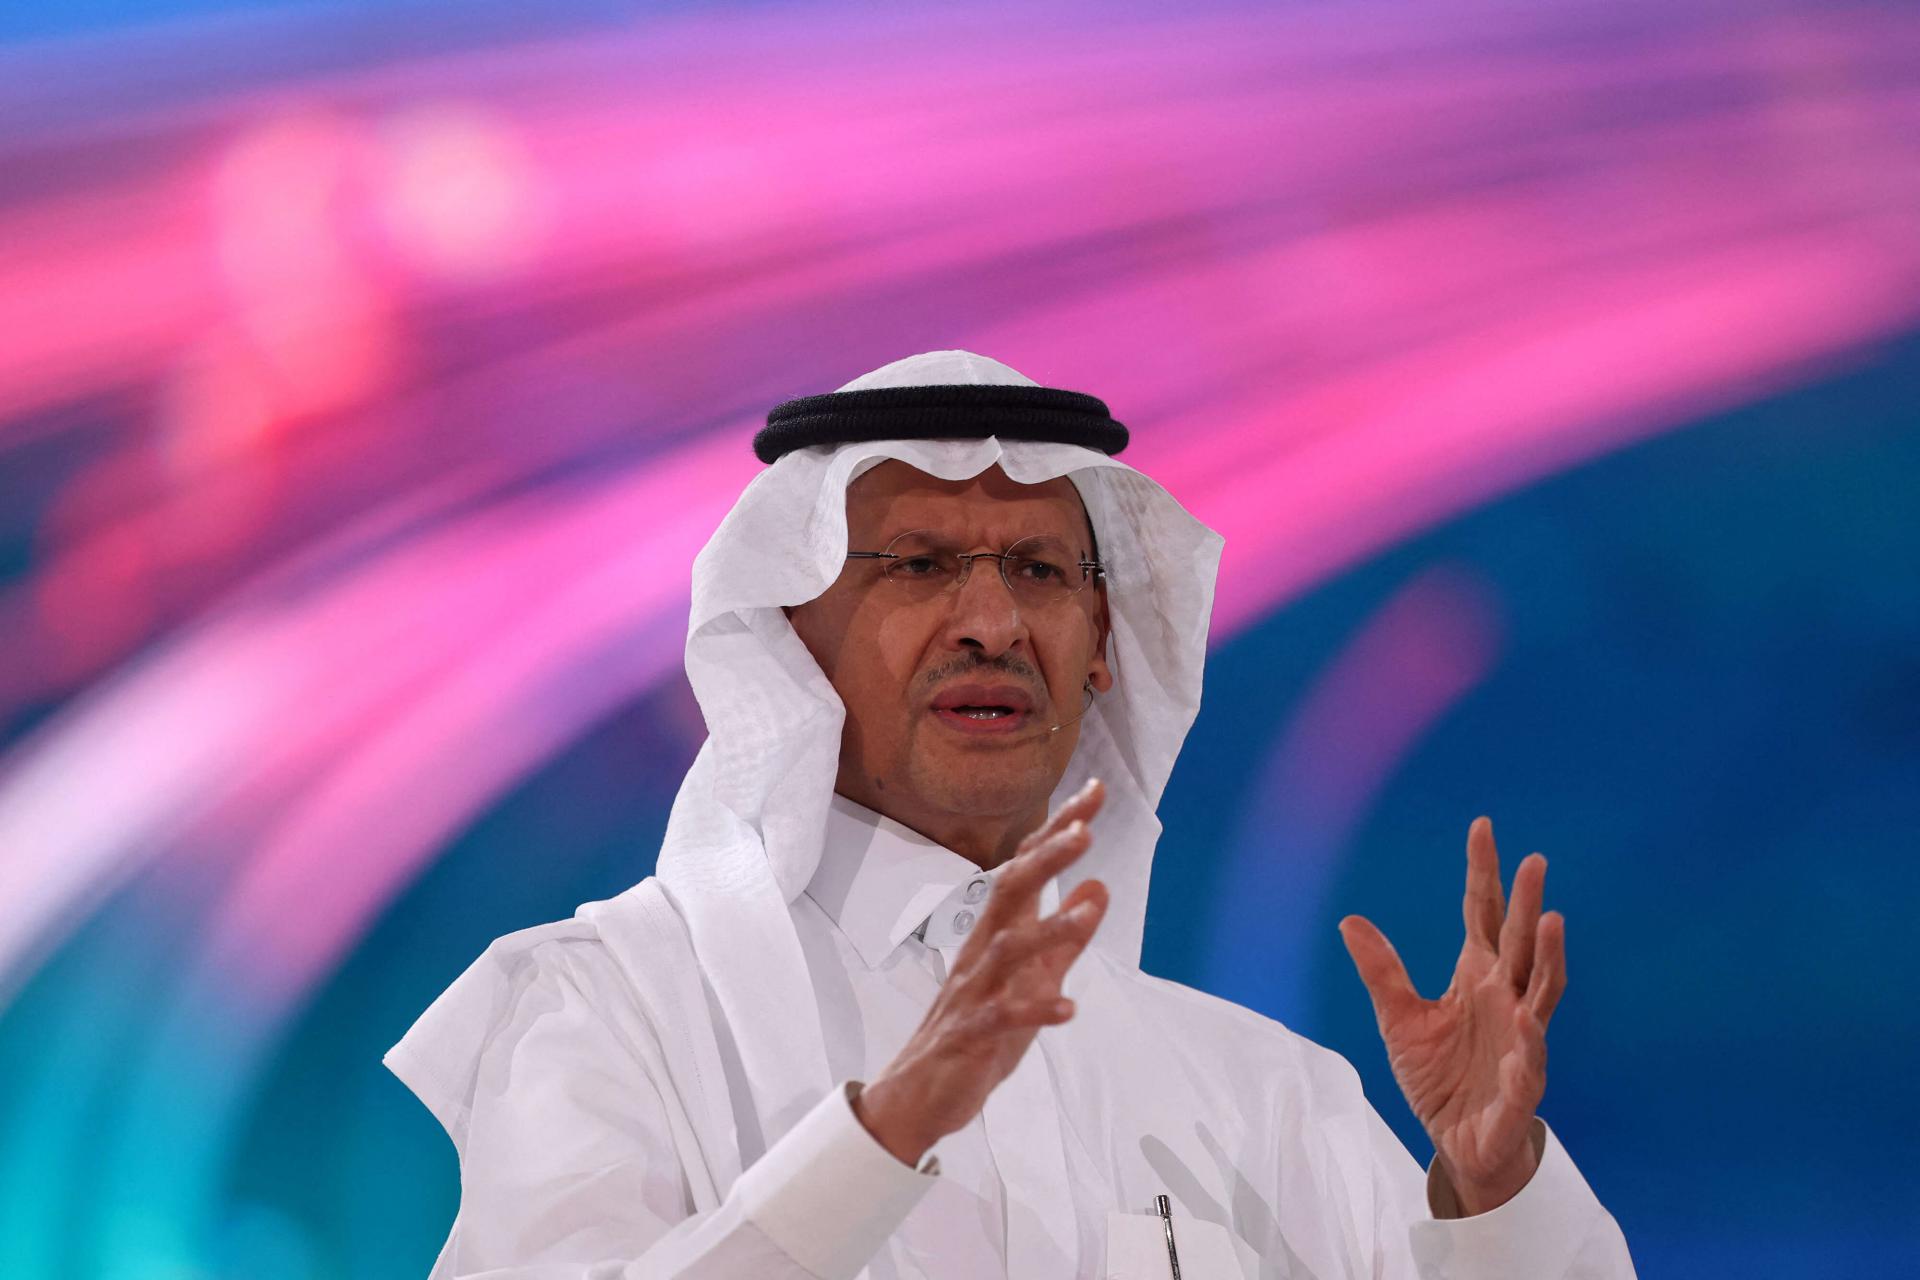 الأمير عبدالعزيز بن سلمان: "اسمع باستمرار إلى هل أنتم معنا أم ضدنا؟ هل هناك أي مساحة أننا مع السعودية ومع الشعب السعودي؟